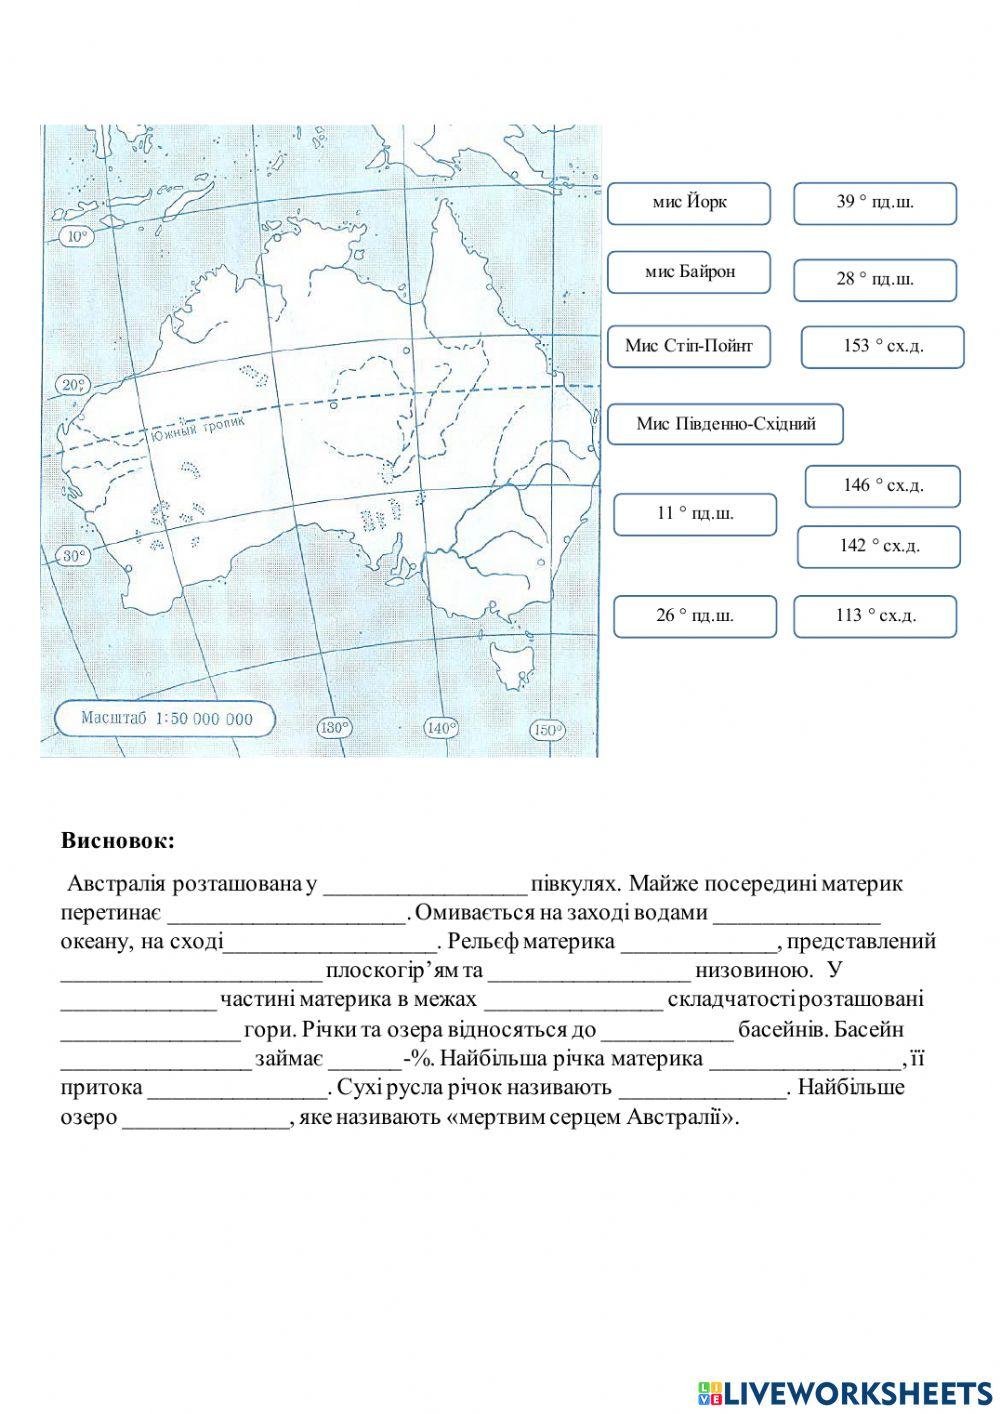 Практична робота 7 Позначення назв основних географічних об’єктів Австралії